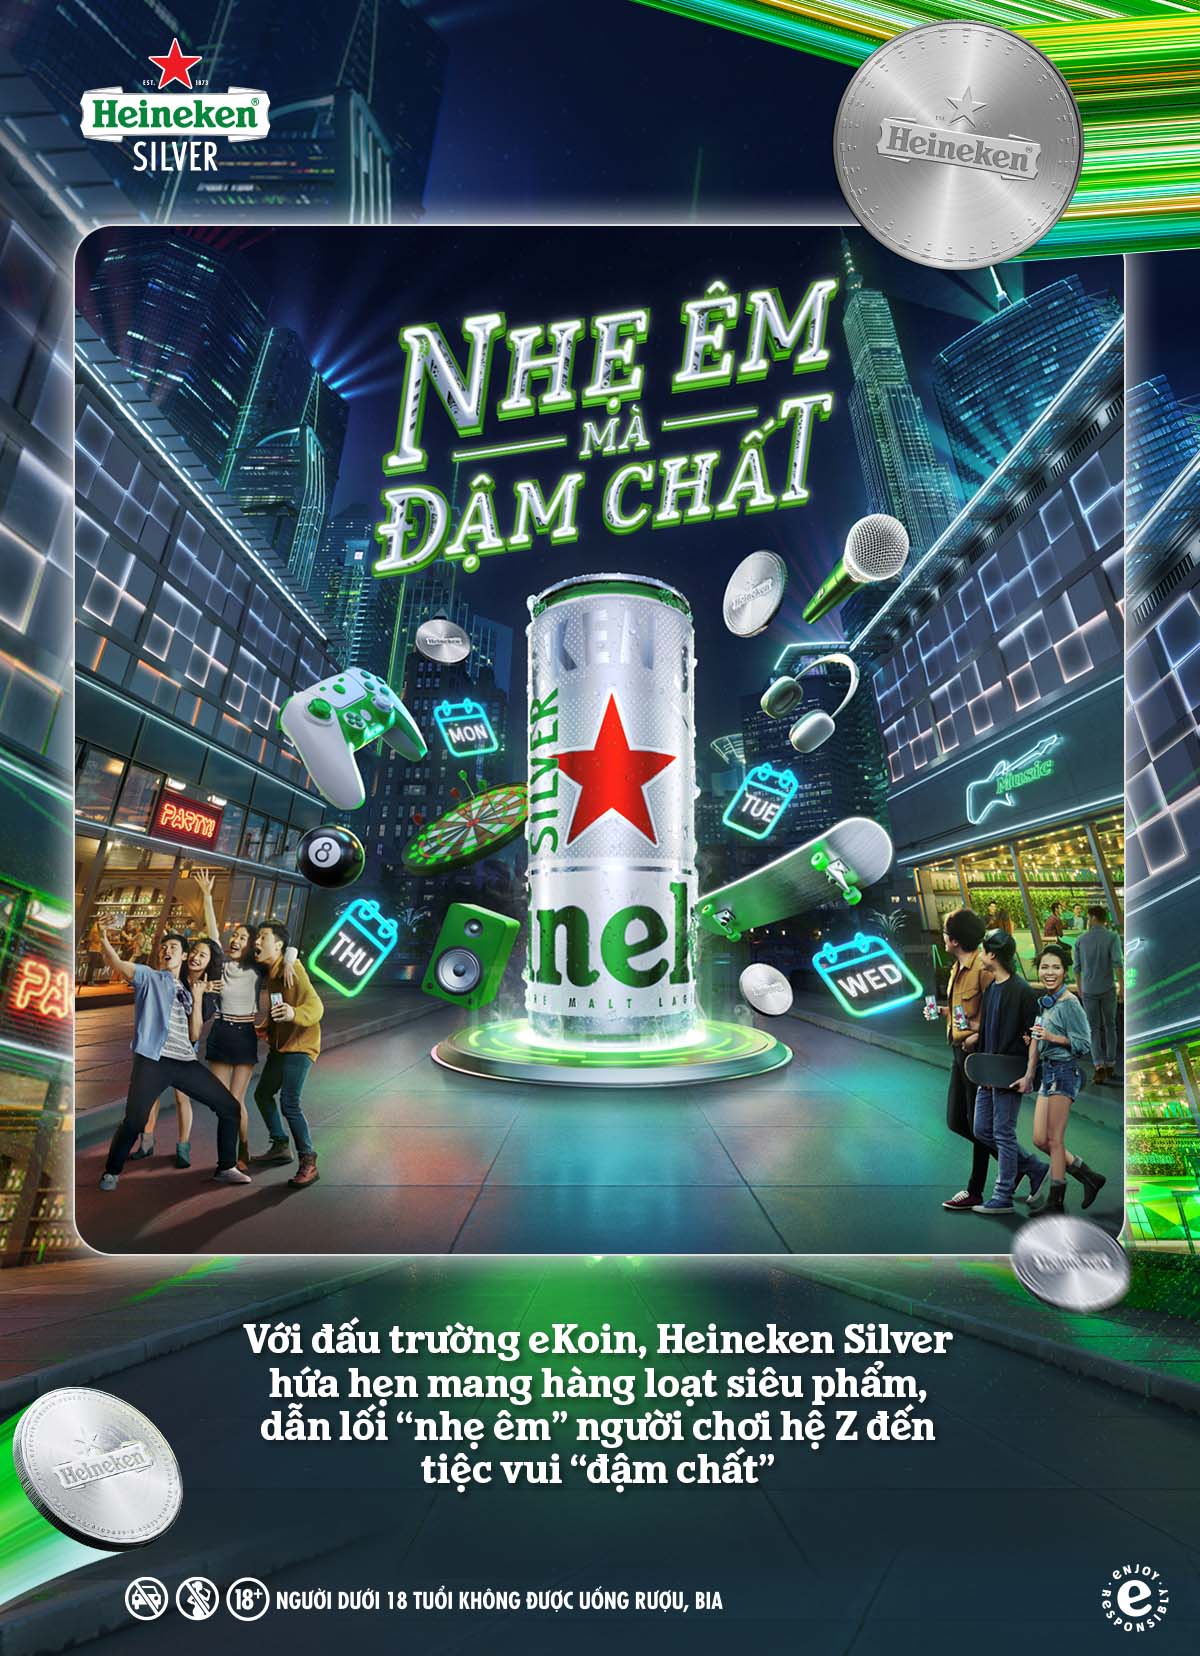 Đấu trường eKoin từ Heineken Silver chiêu mộ cao thủ với loạt quà thời thượng - Ảnh 3.